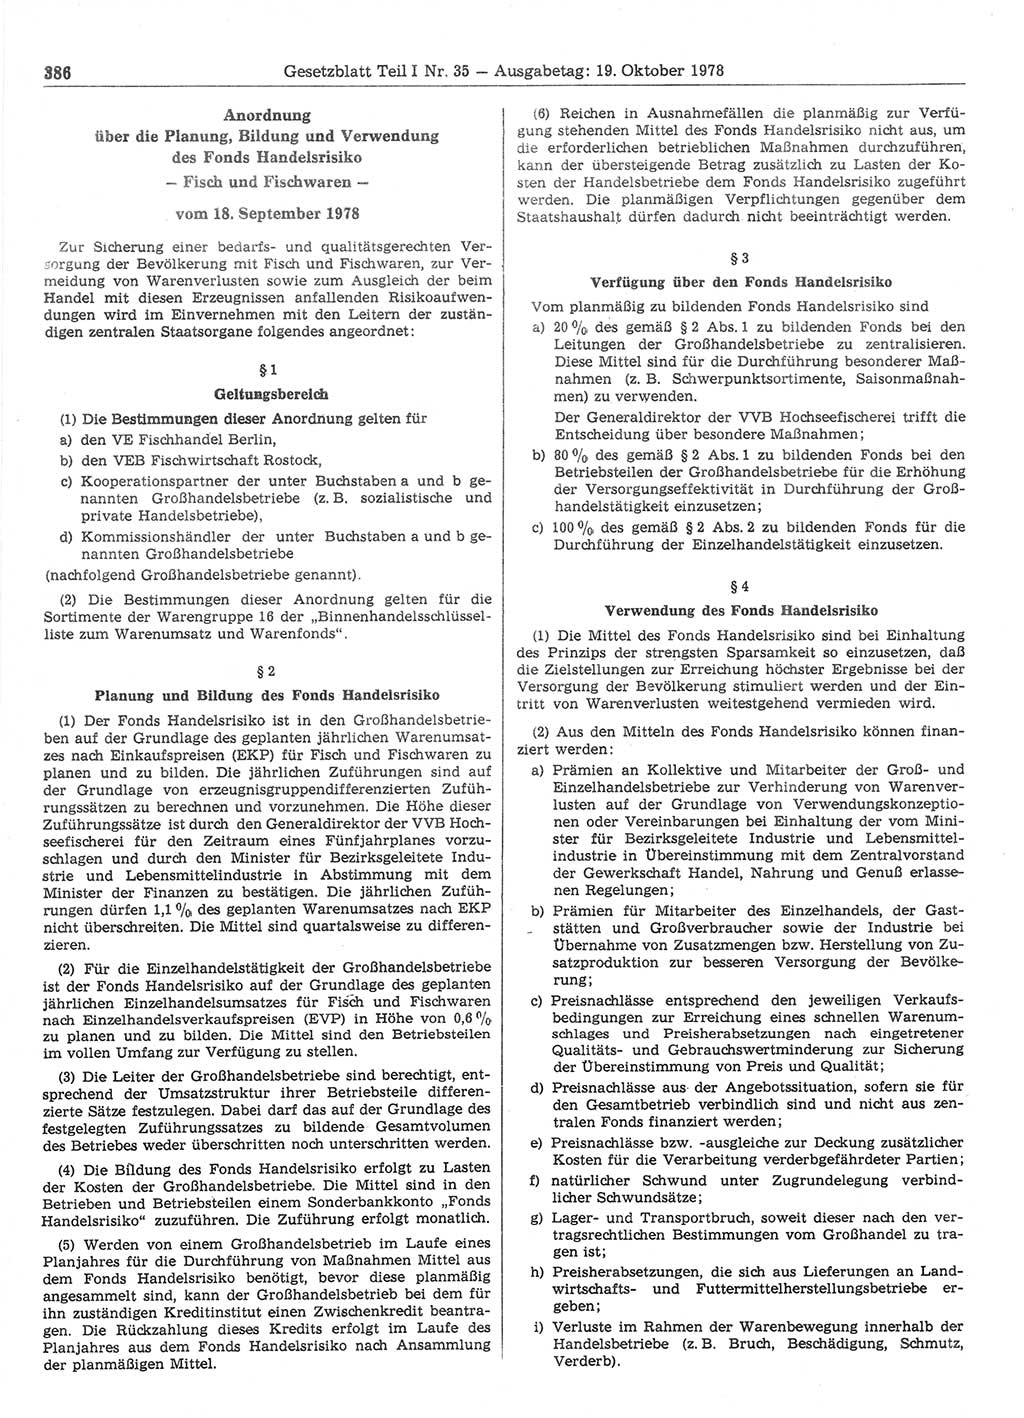 Gesetzblatt (GBl.) der Deutschen Demokratischen Republik (DDR) Teil Ⅰ 1978, Seite 386 (GBl. DDR Ⅰ 1978, S. 386)